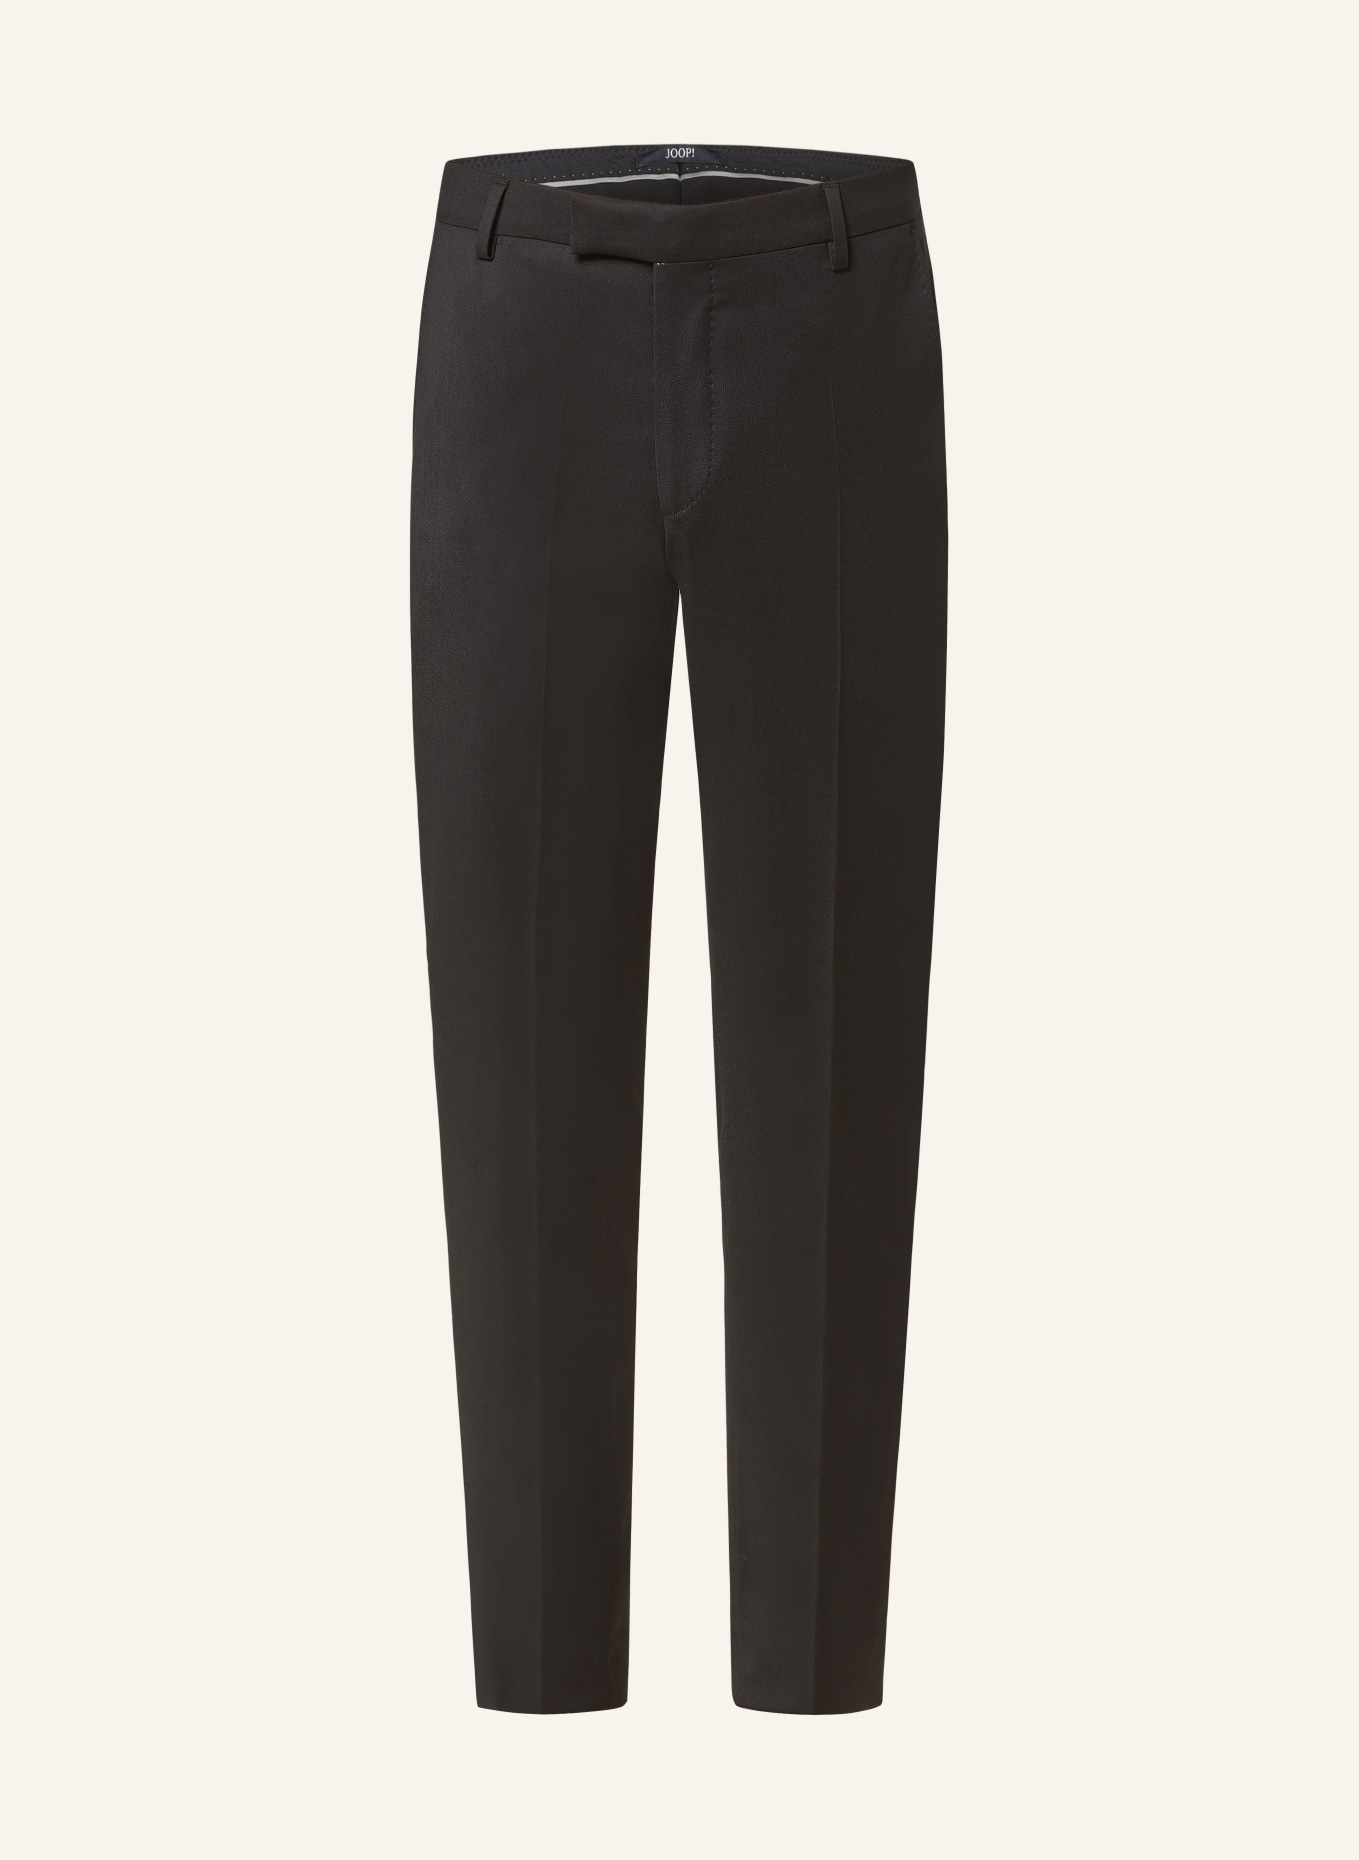 JOOP! Anzughose Slim Fit, Farbe: 001 Black                      001 (Bild 1)